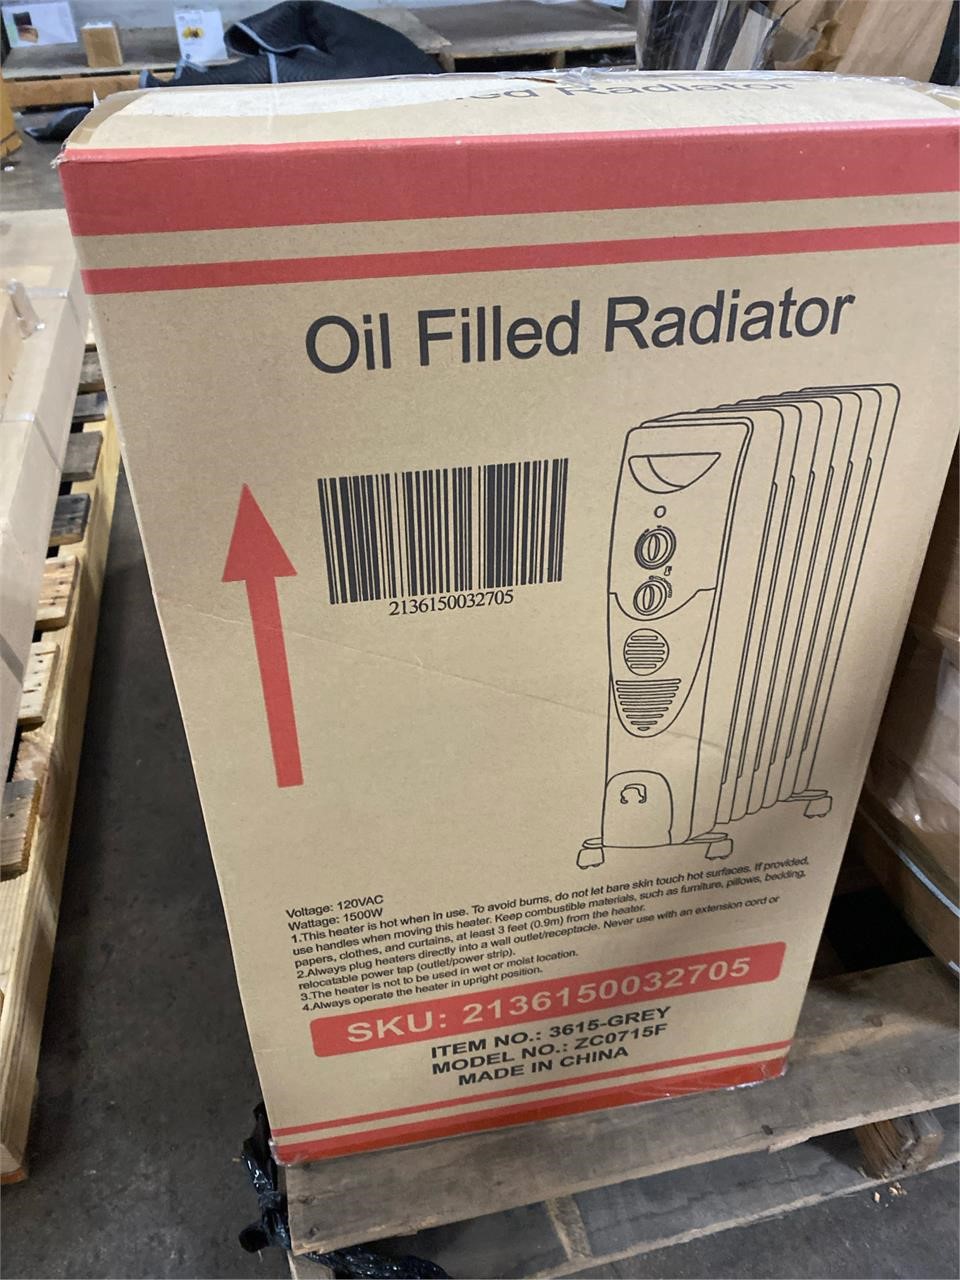 Oil Filled Radiator